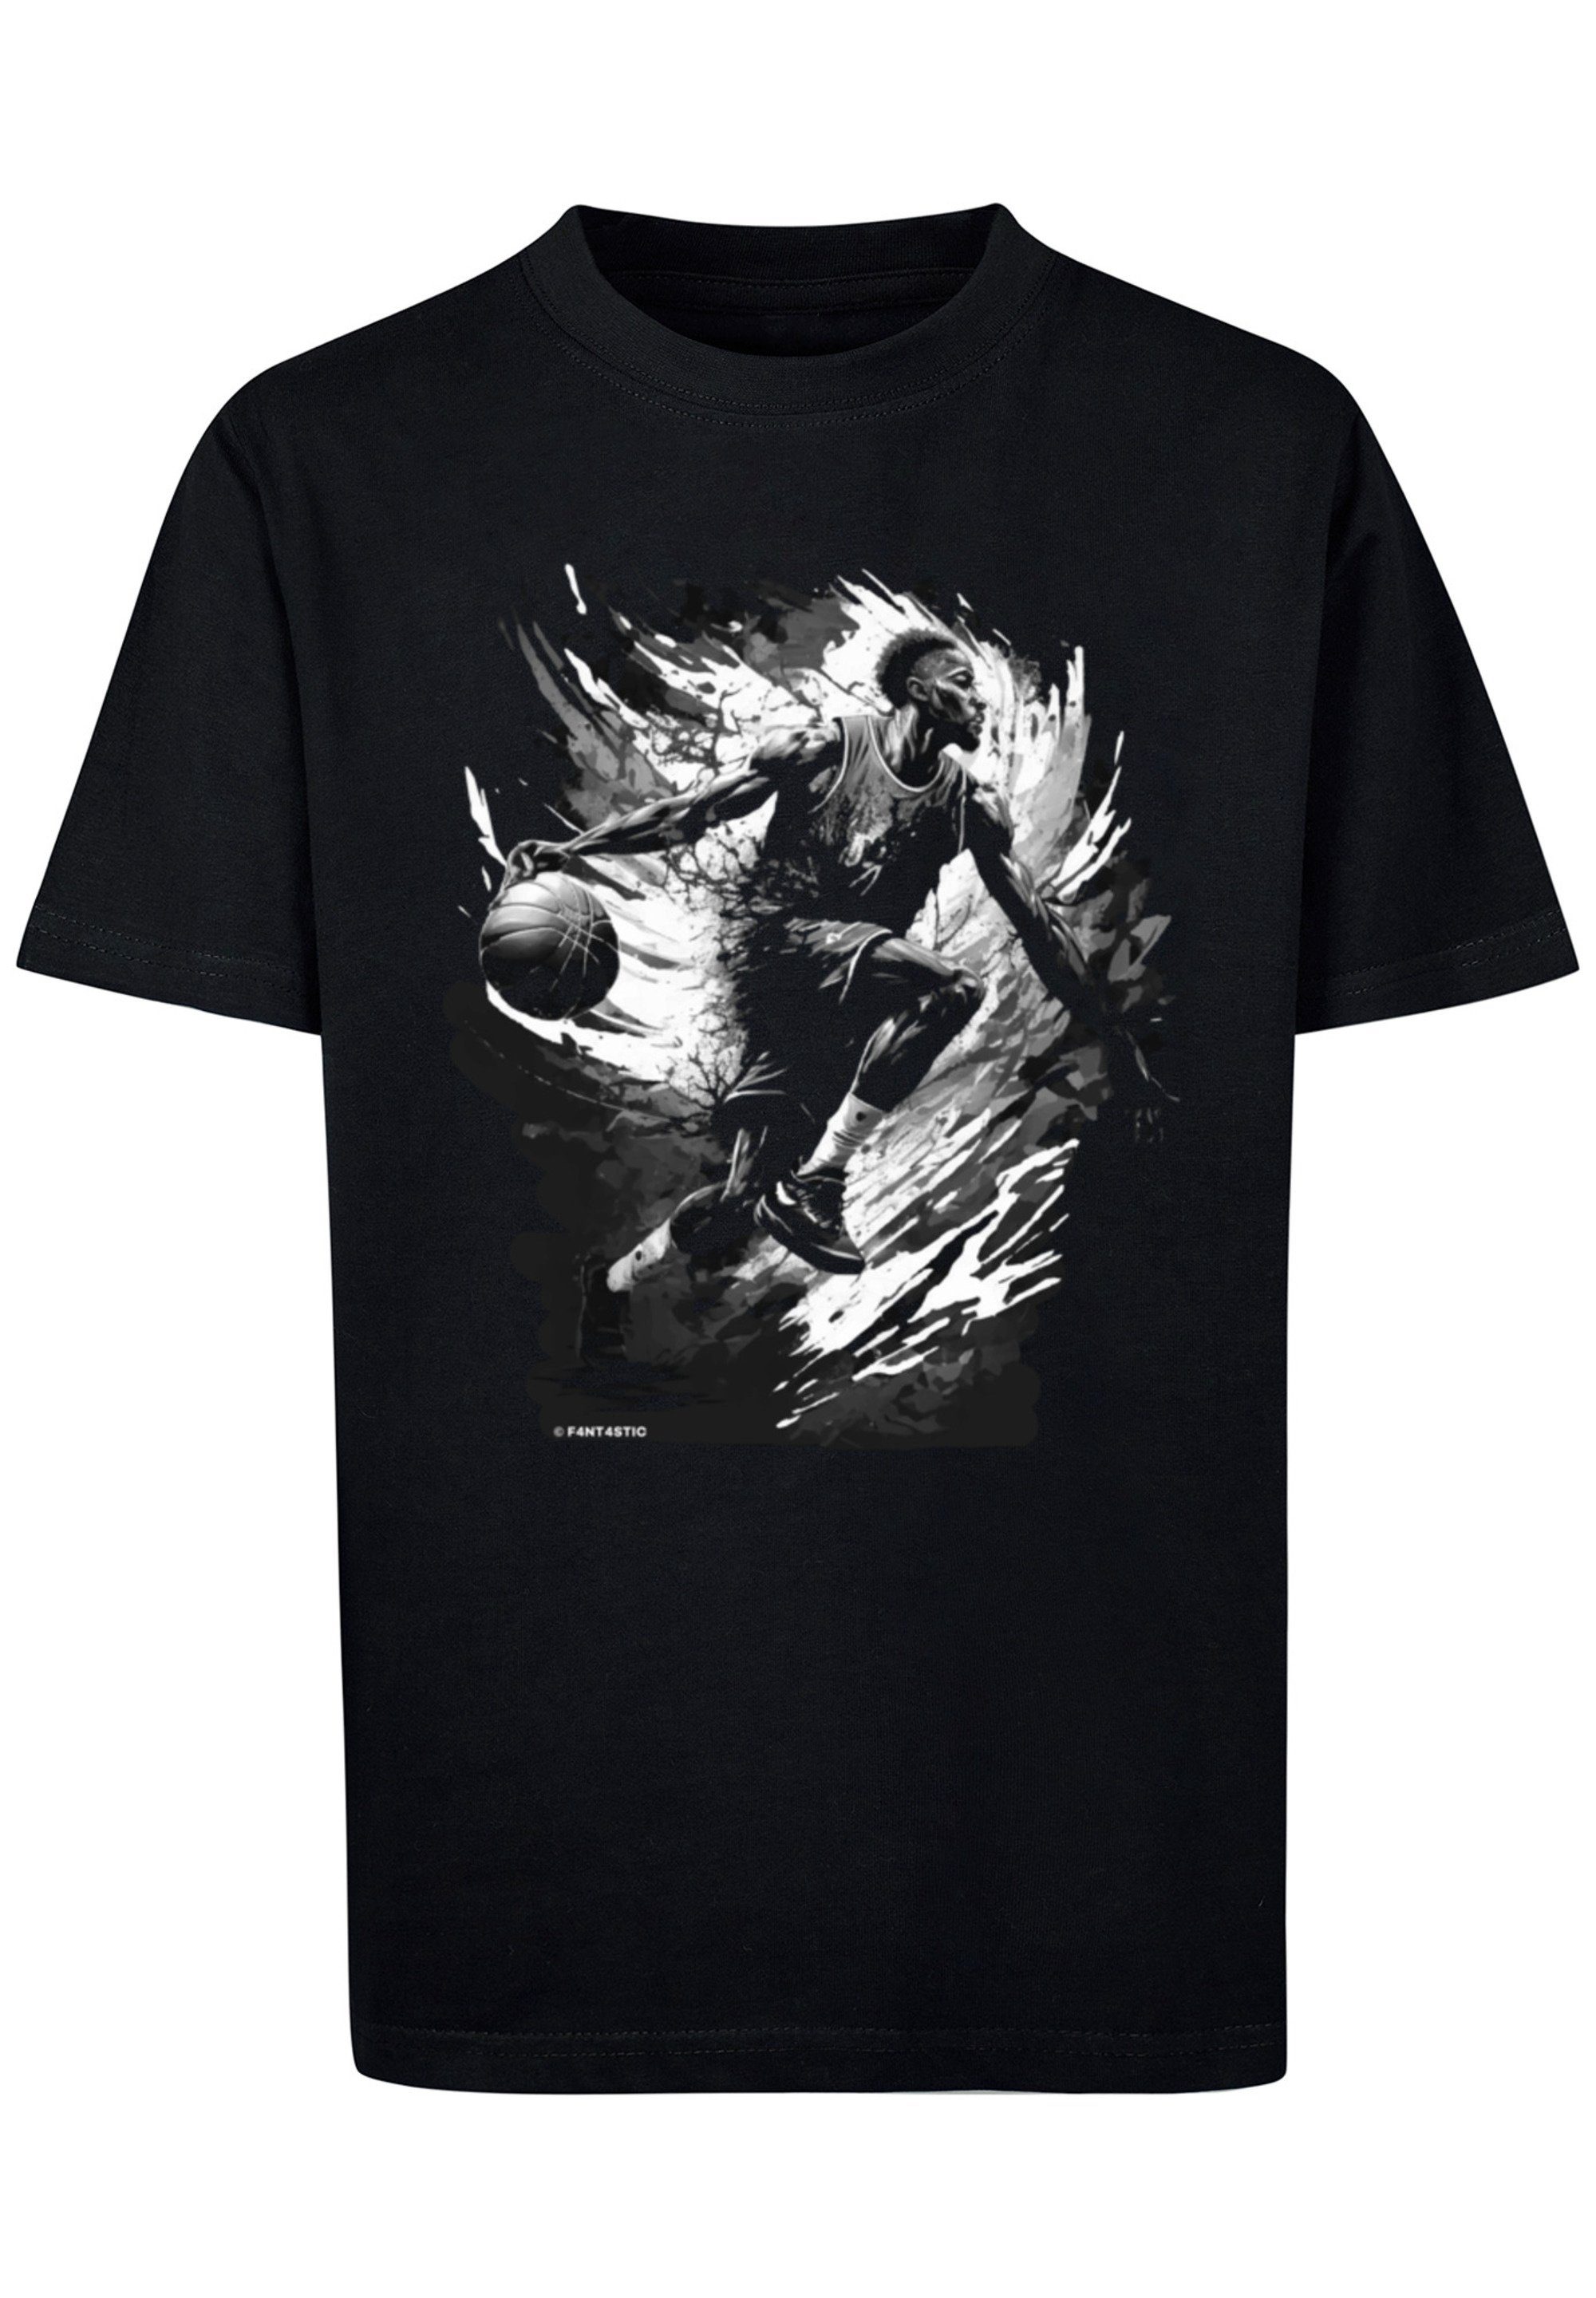 ist Print, Model T-Shirt 145/152 UNISEX Das cm F4NT4STIC Sport und trägt Splash 145 groß Größe Basketball